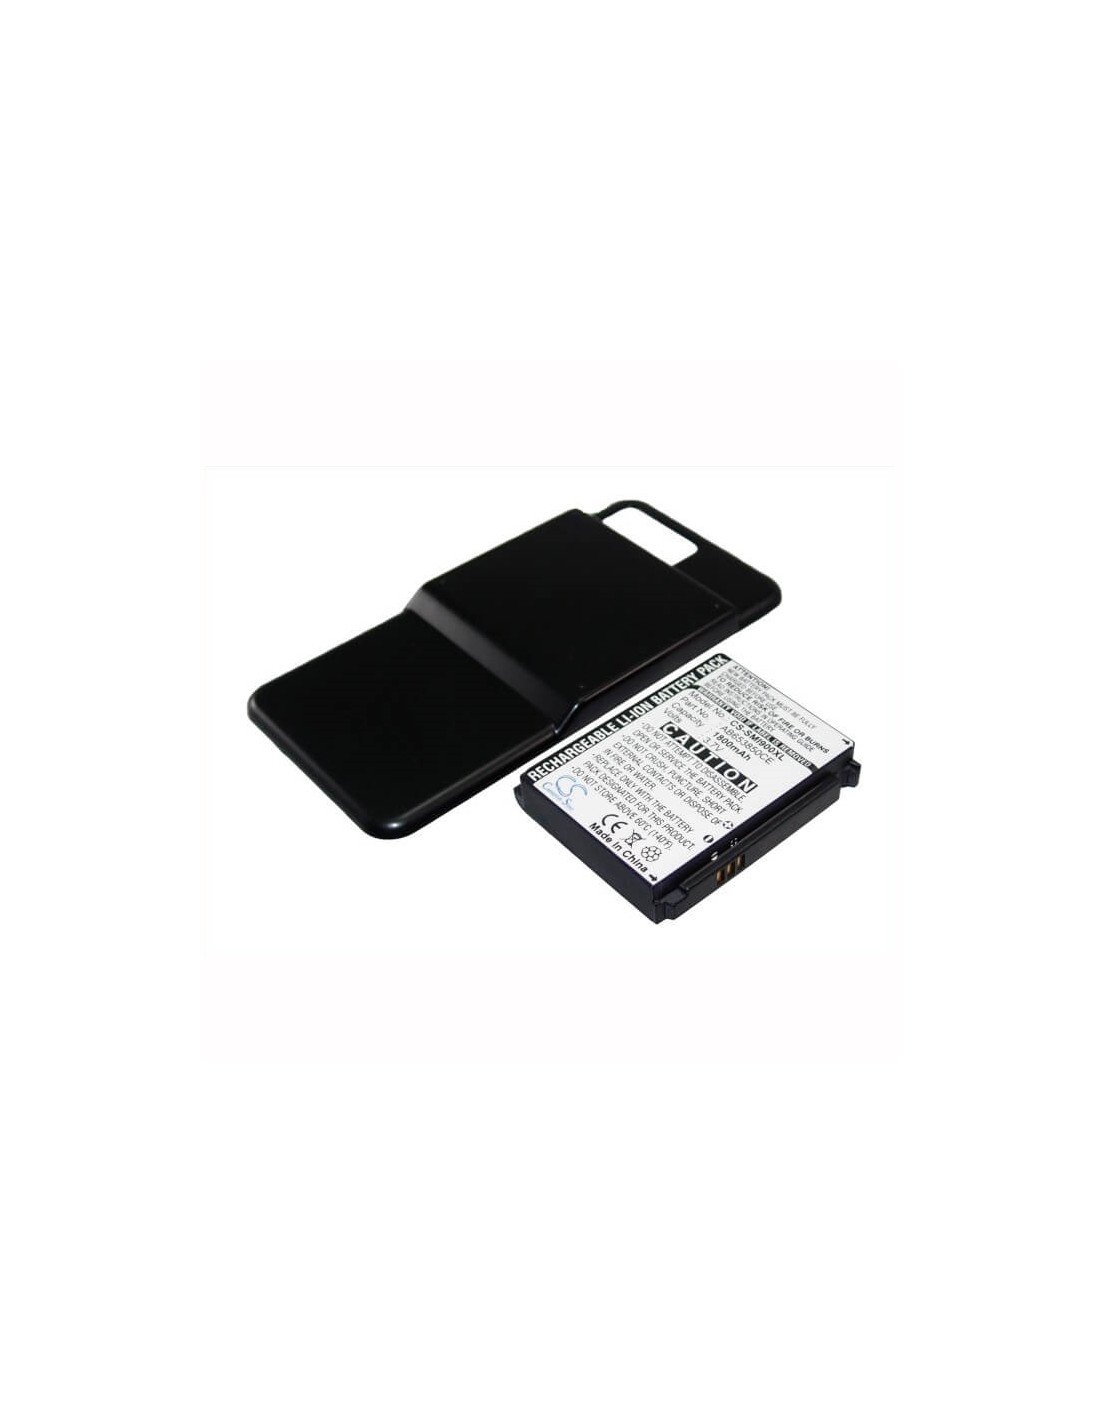 Battery for Samsung SGH-i900, SGH-i900v, SGH-i908 3.7V, 1800mAh - 6.66Wh